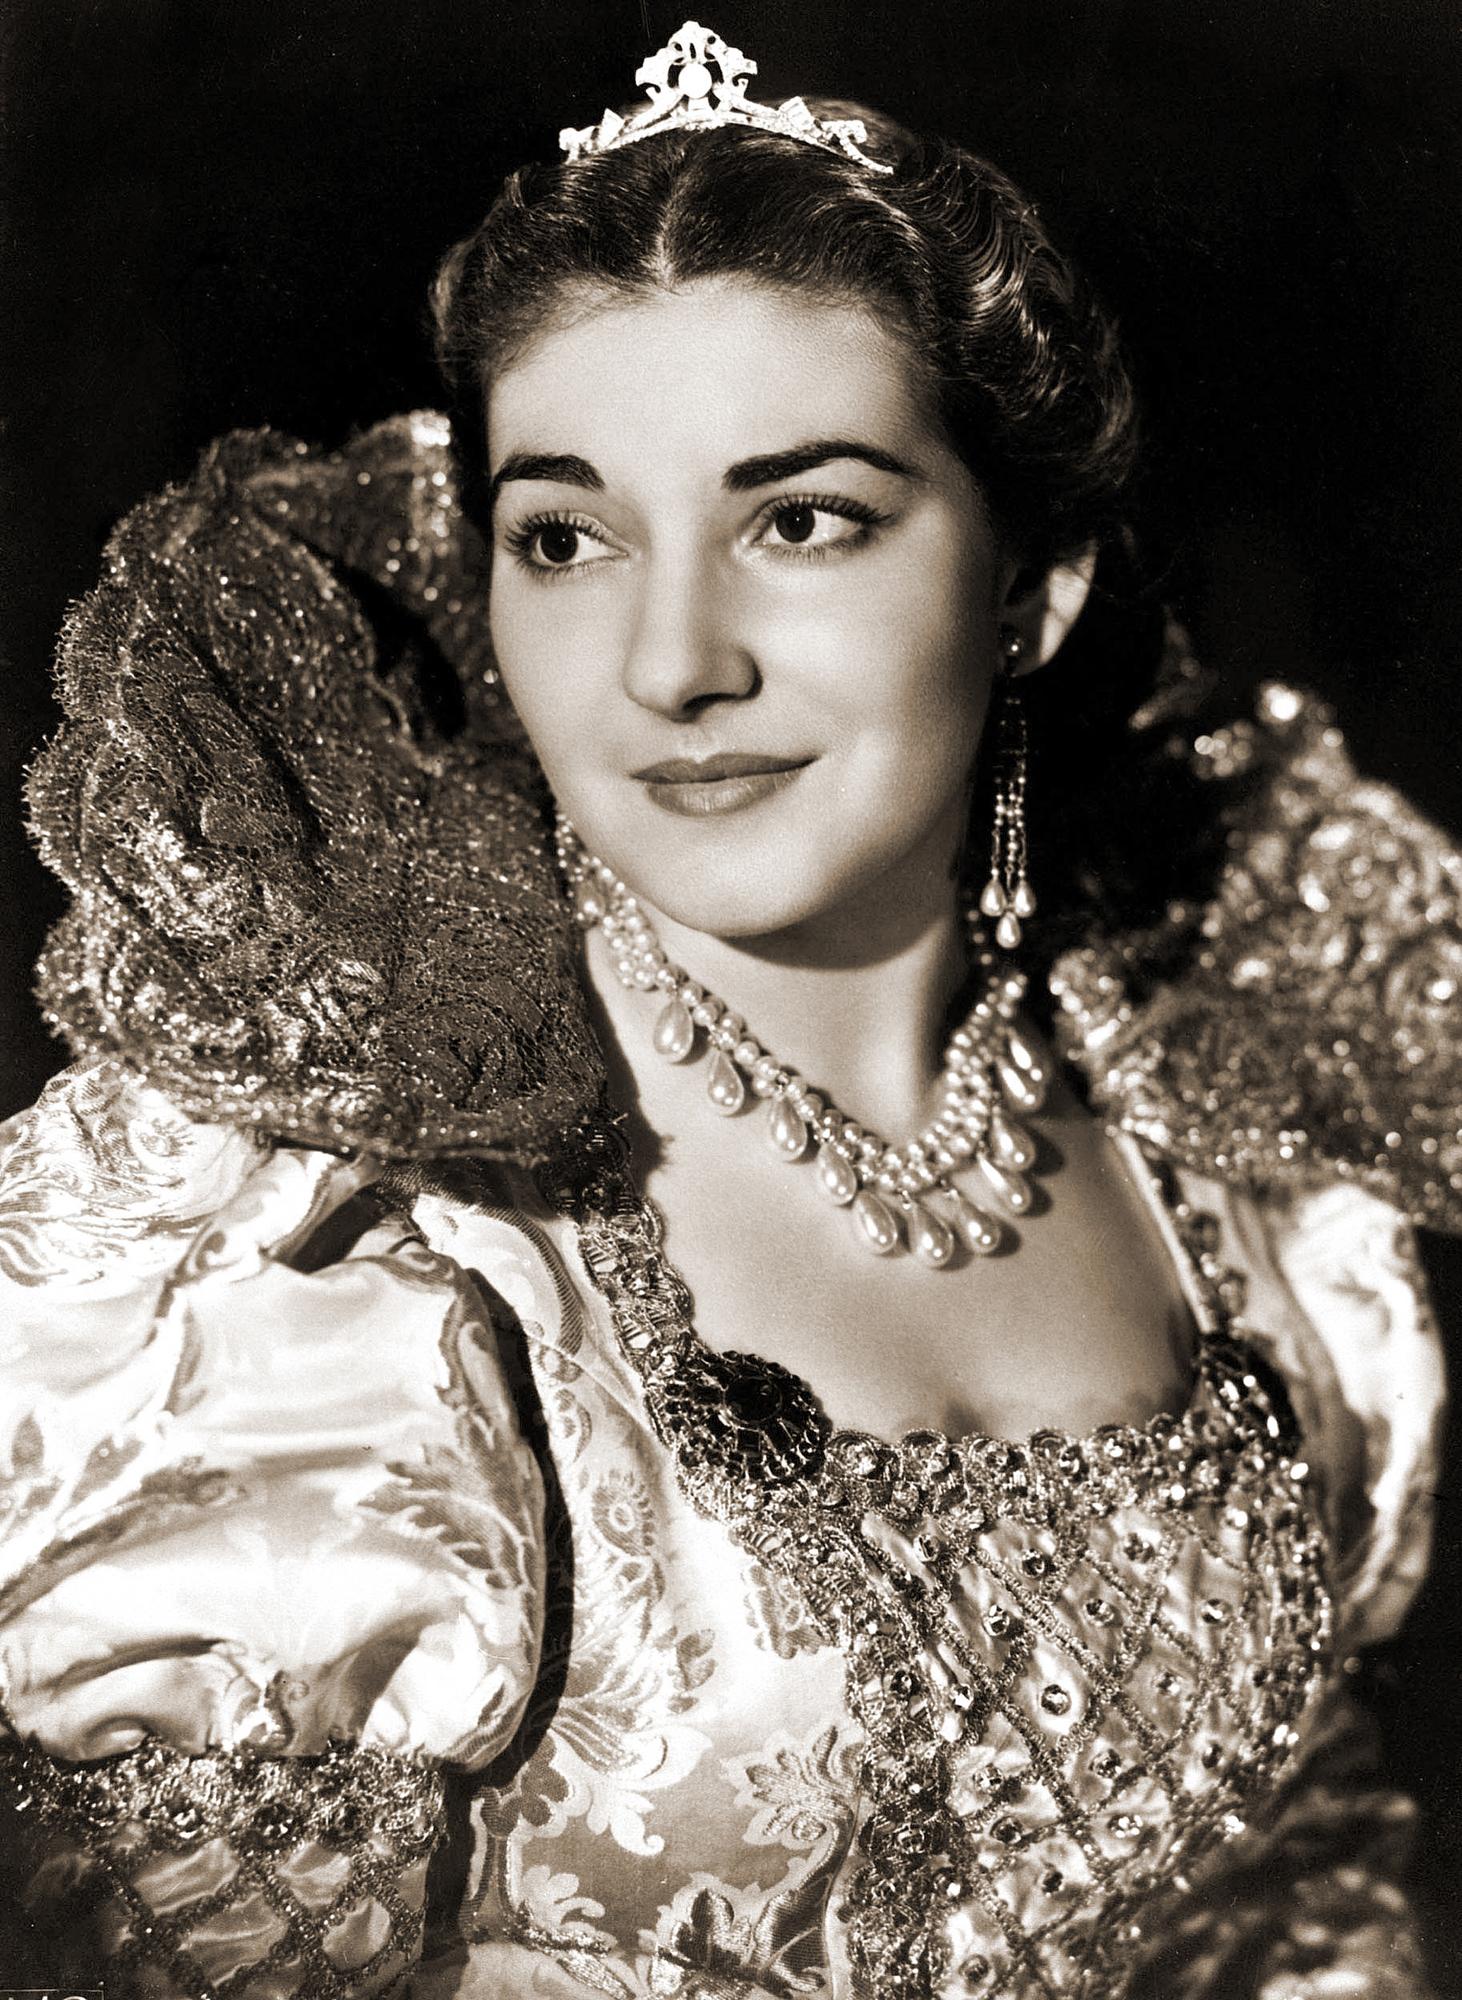 Maria Callas en 1949 à la Fenice, à Venise, dans le rôle de Elvira dans l'opéra "I Puritani" de Bellini. [AFP]